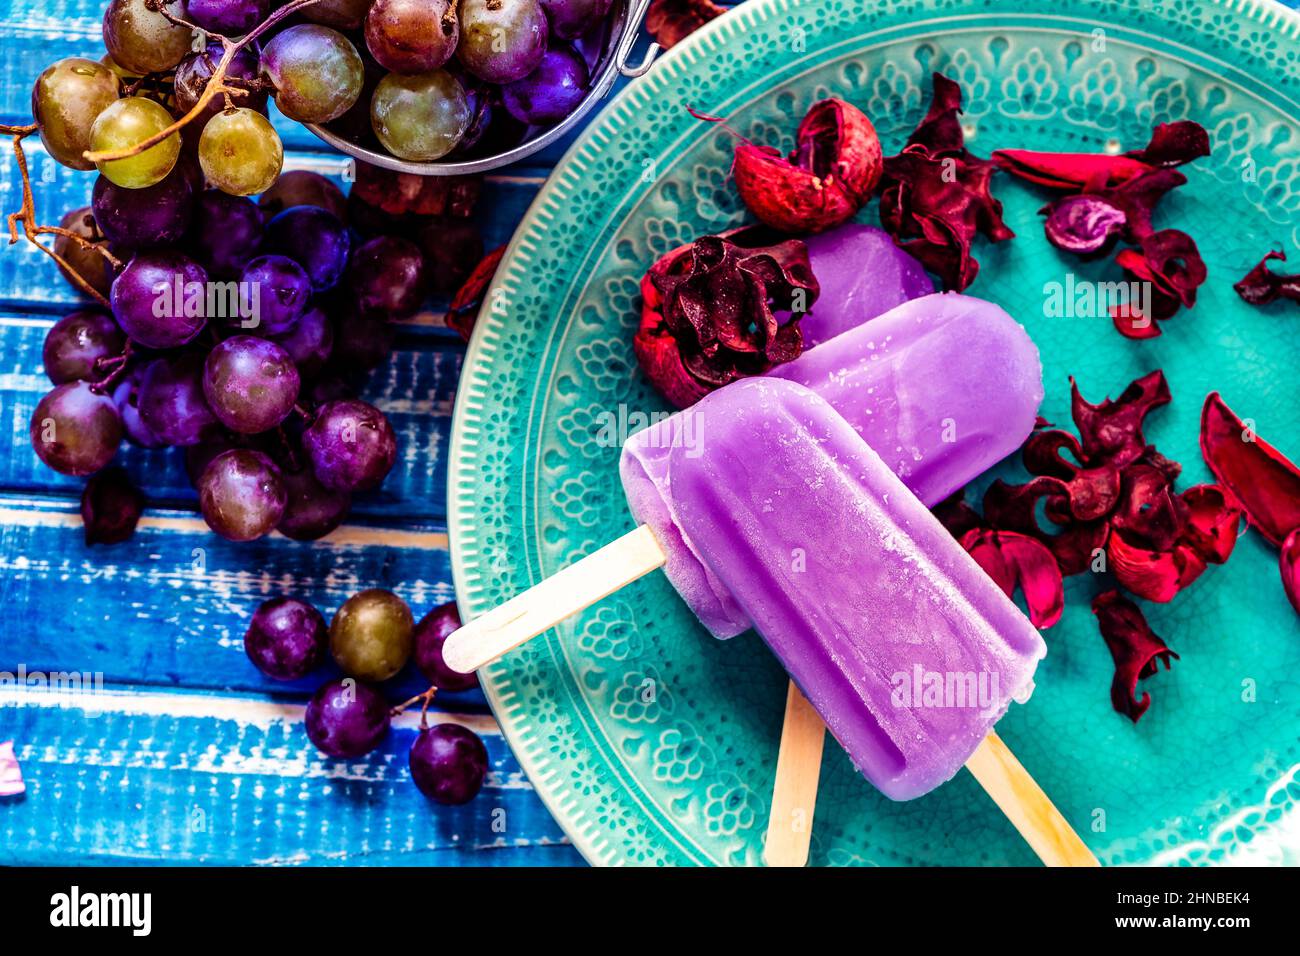 Une glace au raisin de style Lollipop sur un bâton sur une assiette vintage sur une table en bois bleu clair. Concept d'alimentation naturelle et saine. CopySpace. Banque D'Images